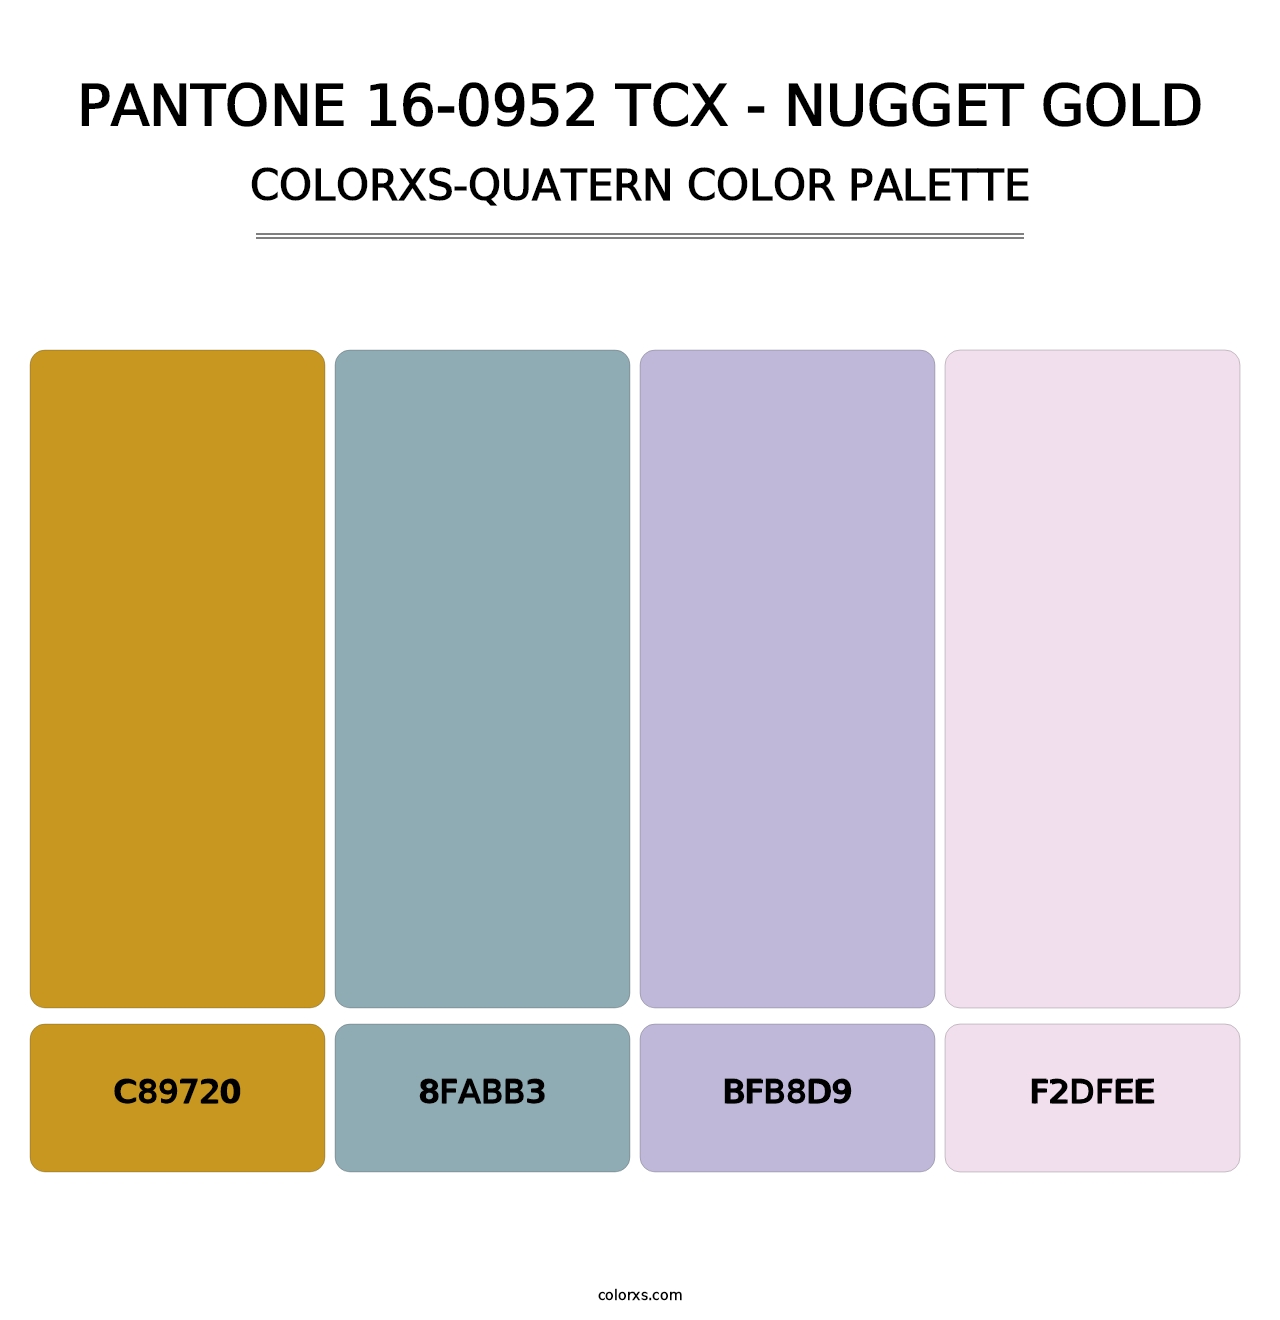 PANTONE 16-0952 TCX - Nugget Gold - Colorxs Quatern Palette